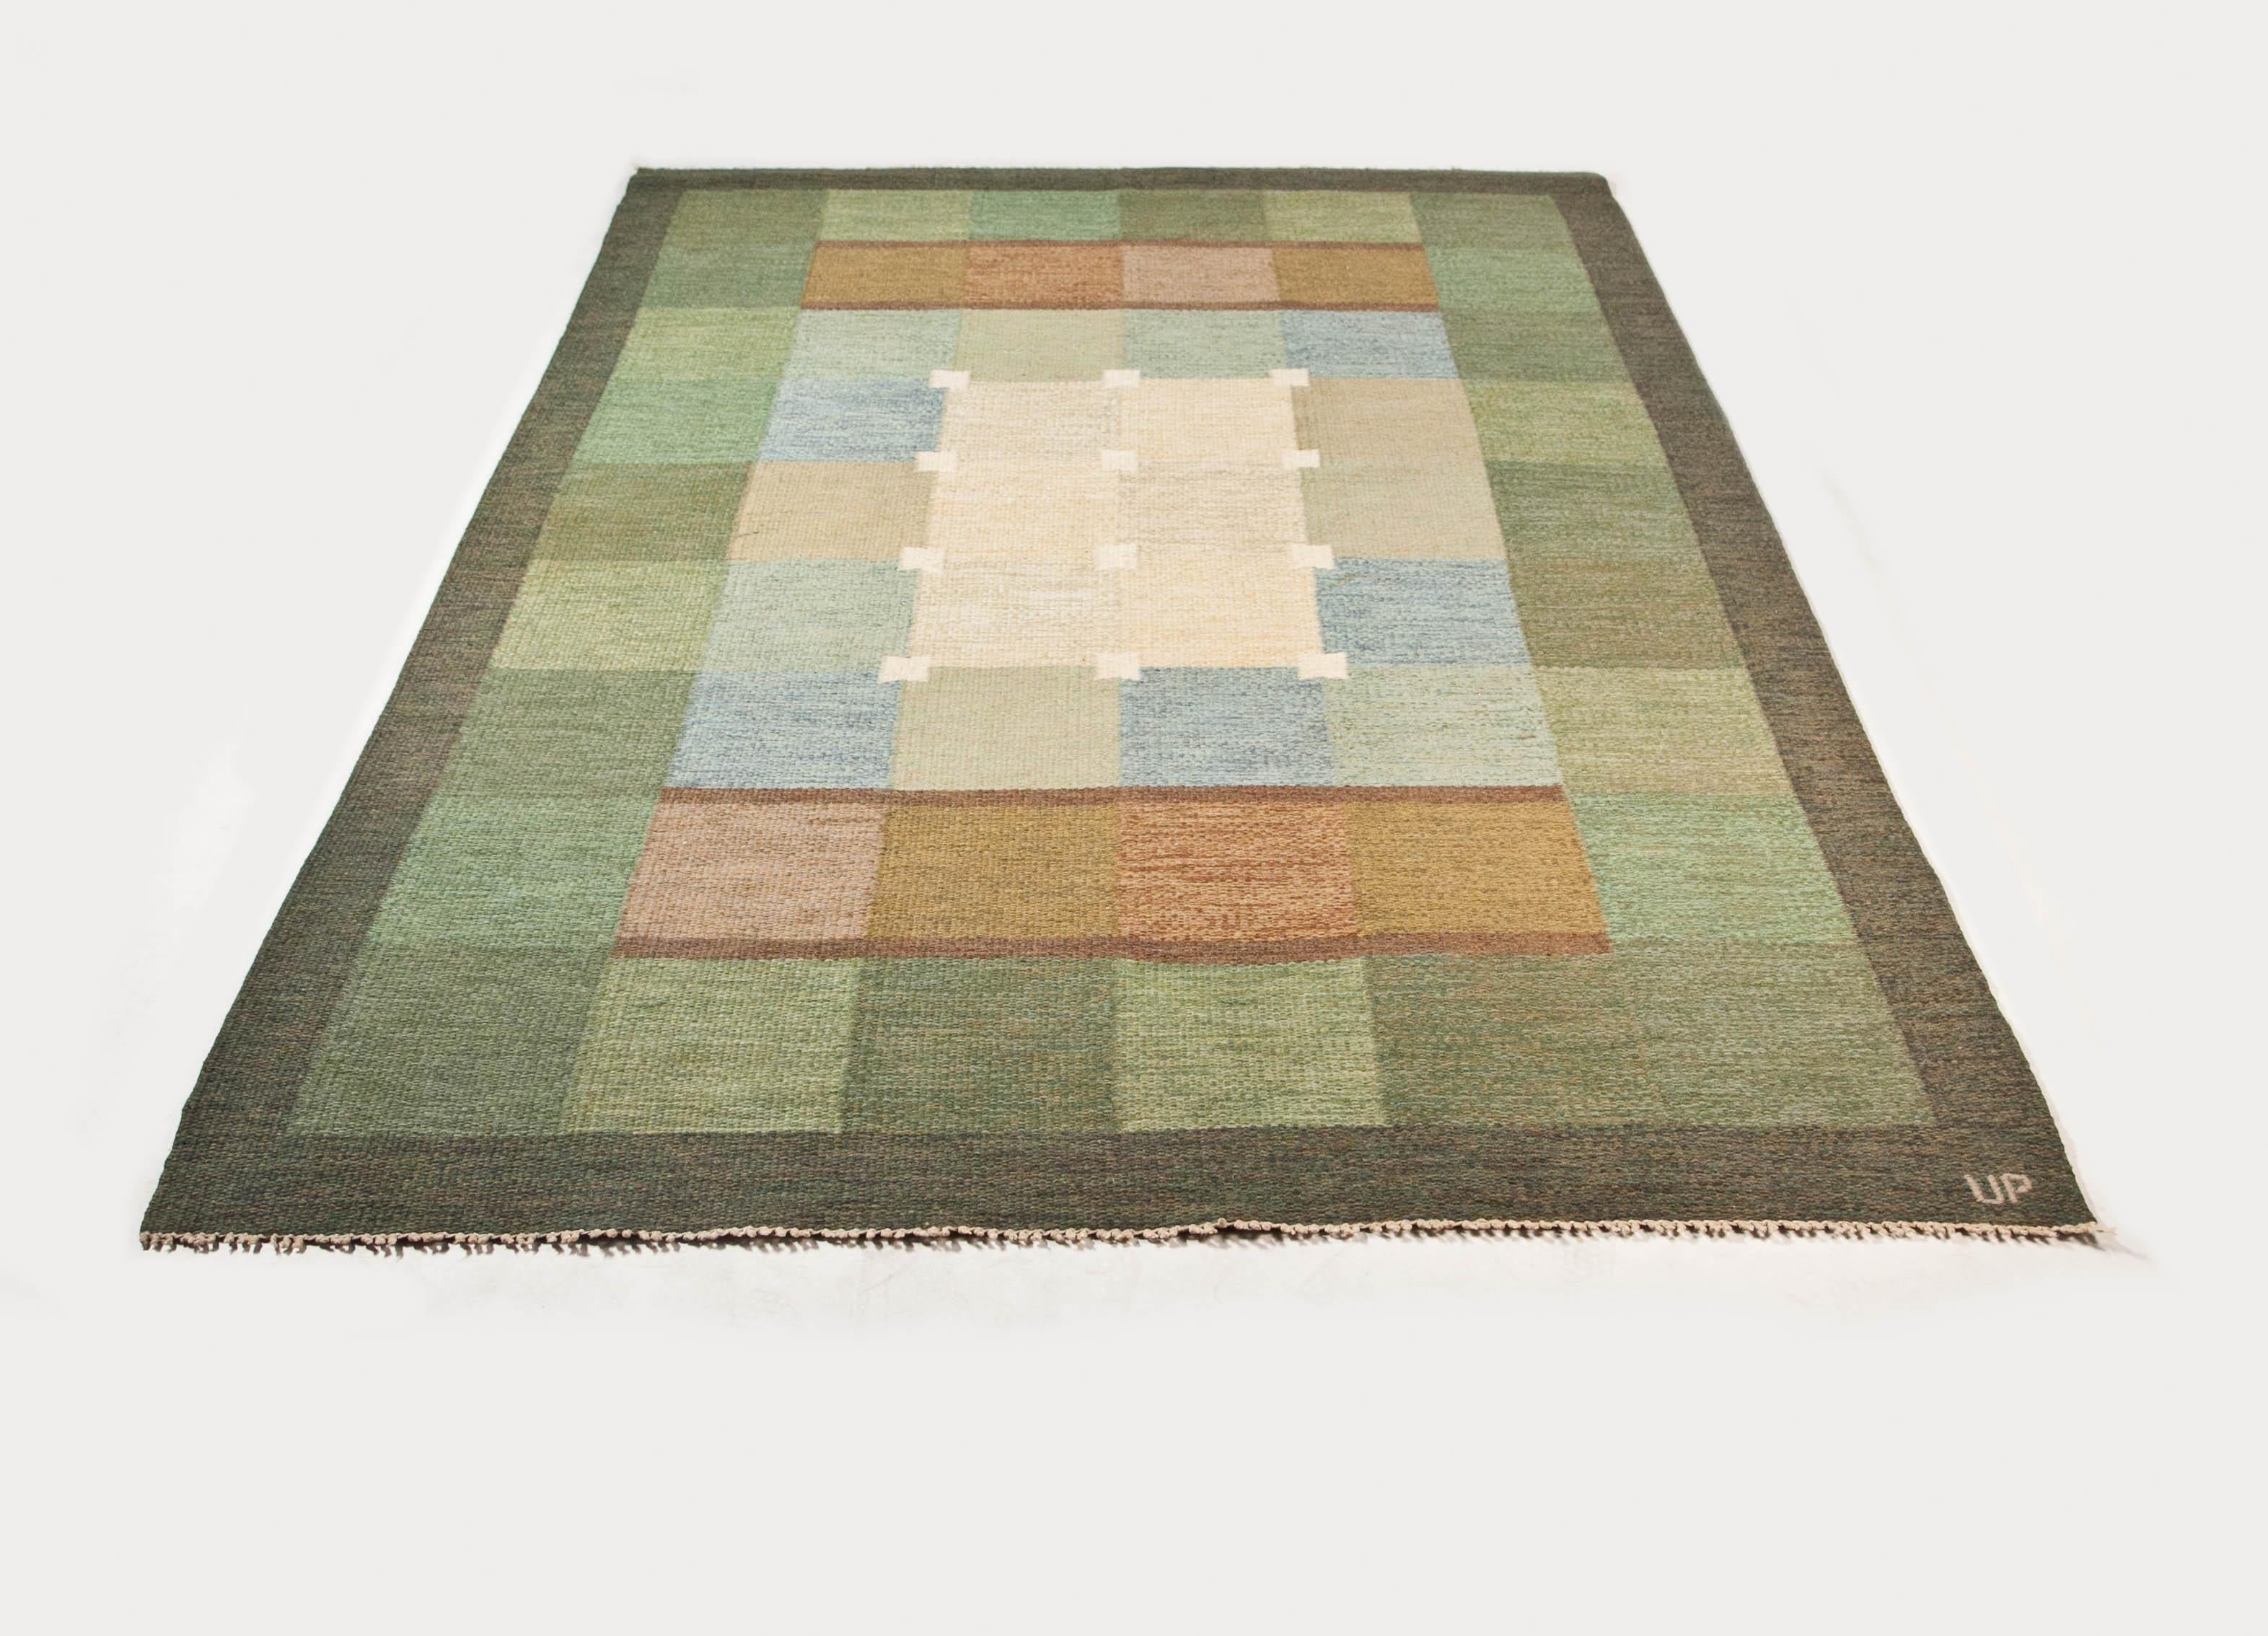 Ulla Parkdal - Swedish flate weave rug - Sweden 1960's - 94